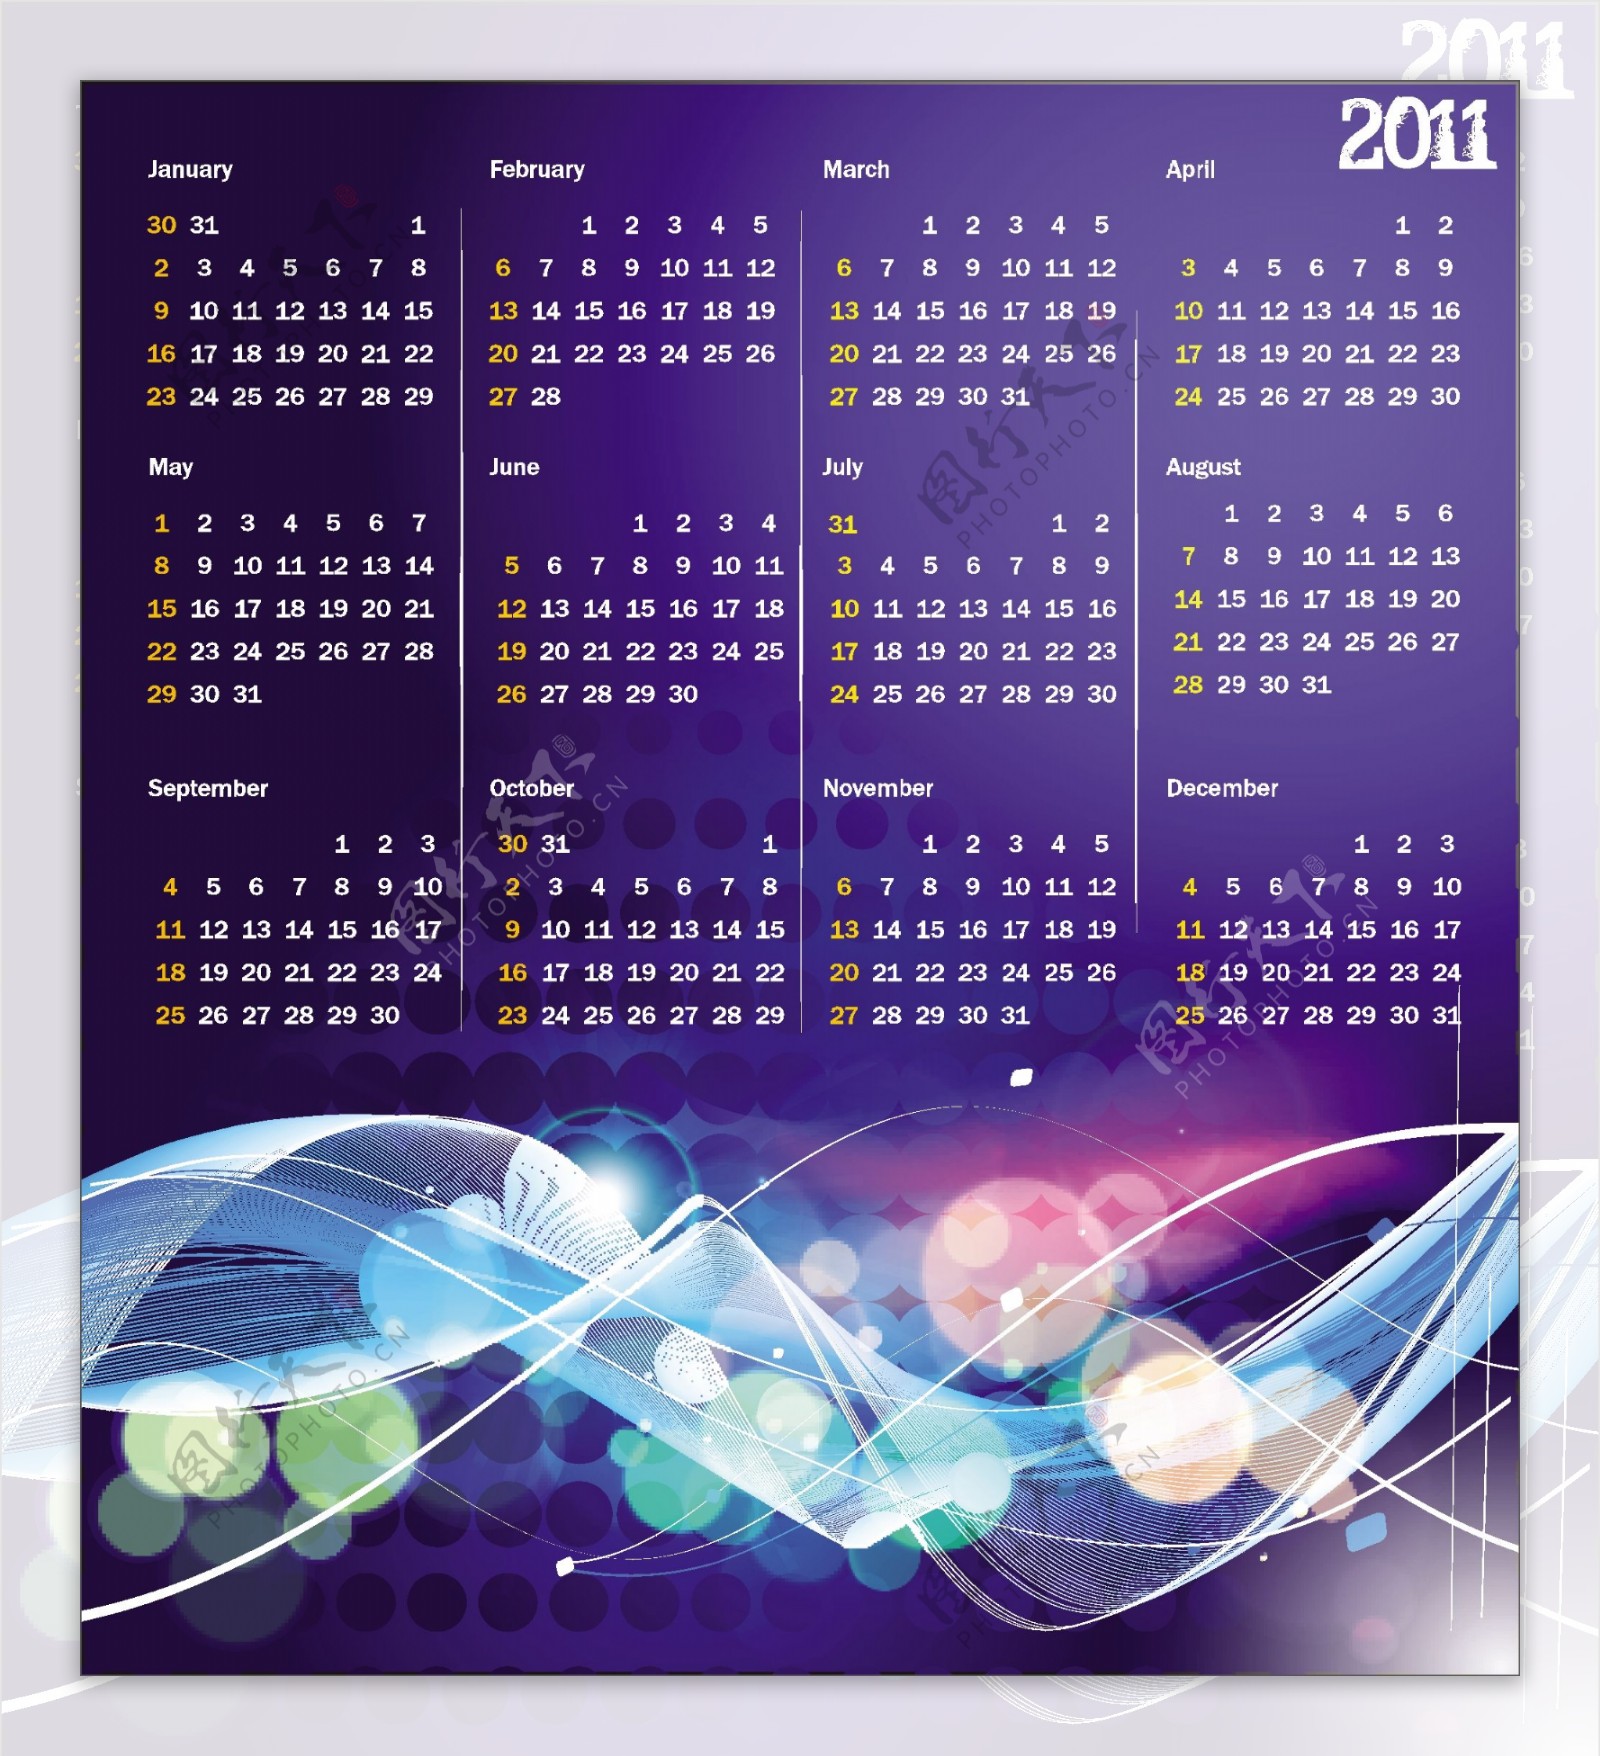 2011炫彩年历表日历表矢量素材